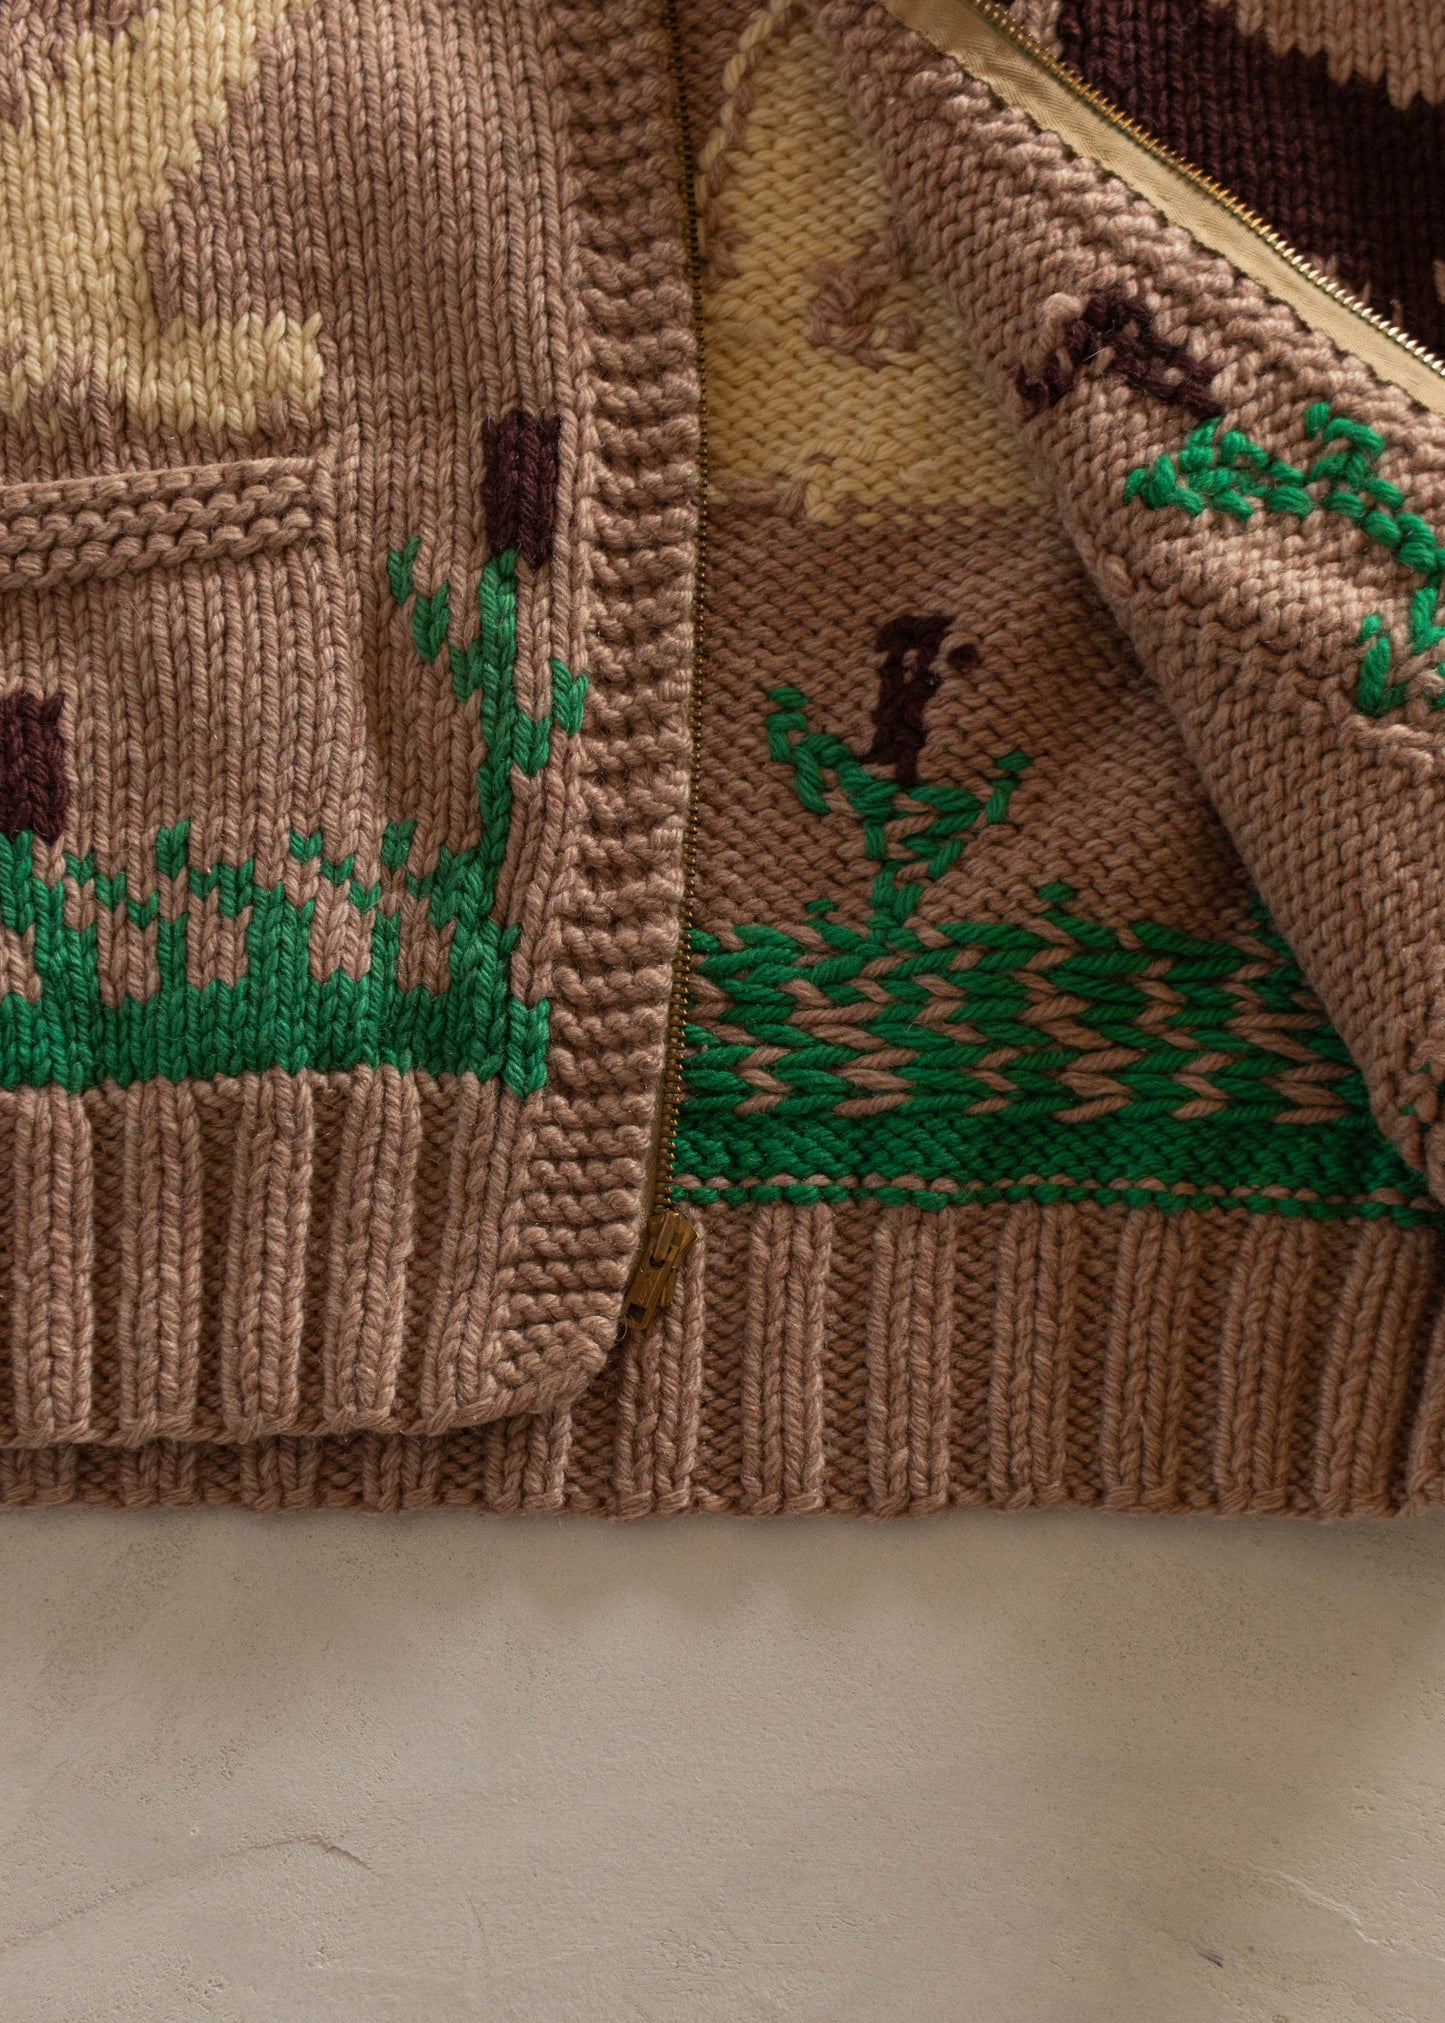 1980s Duck Pattern Cowichan Style Wool Cardigan Size M/L